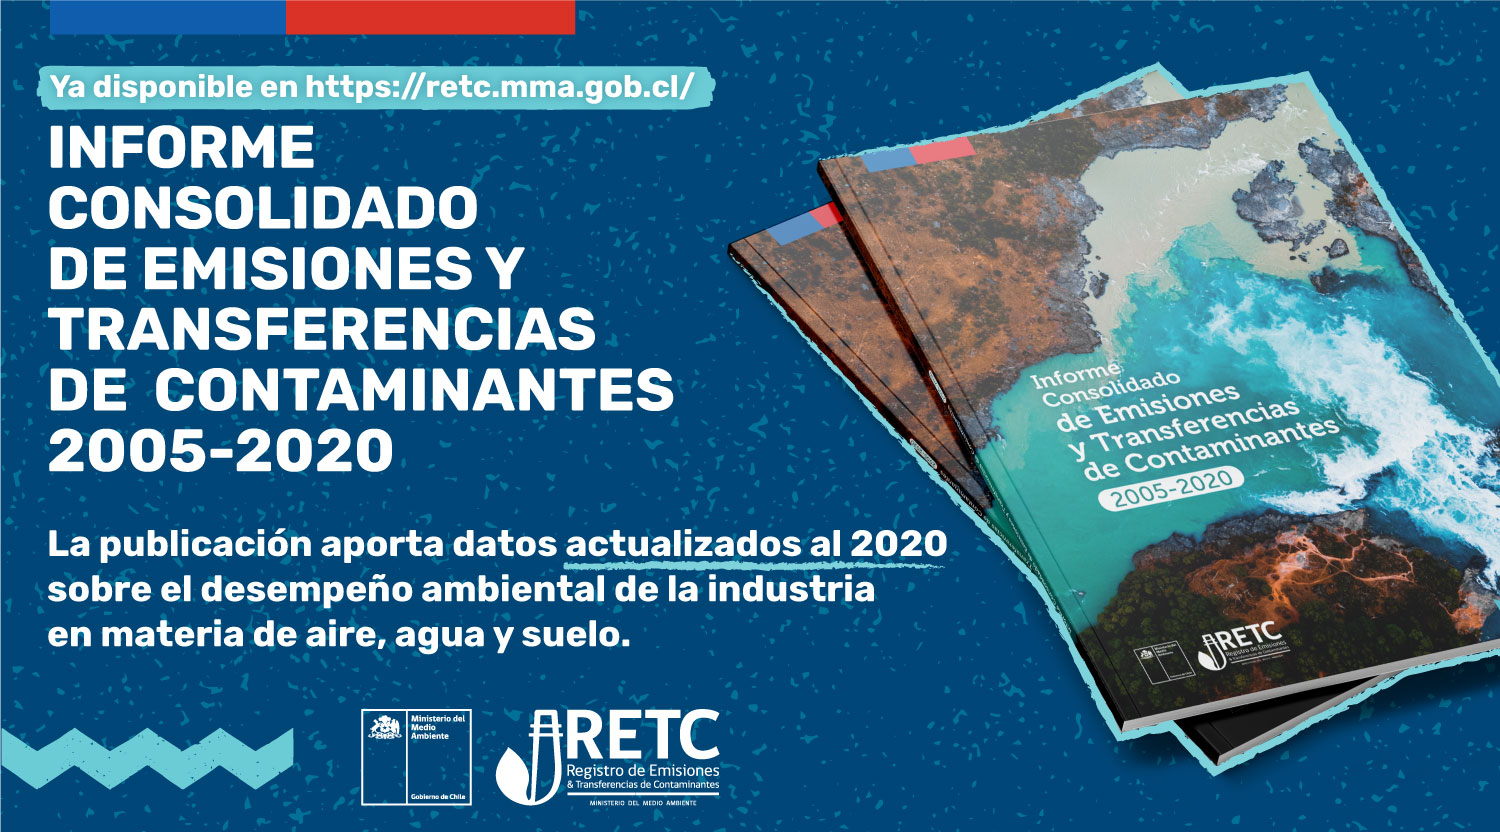 Publican informe consolidado de emisiones y transferencias de contaminantes al 2020